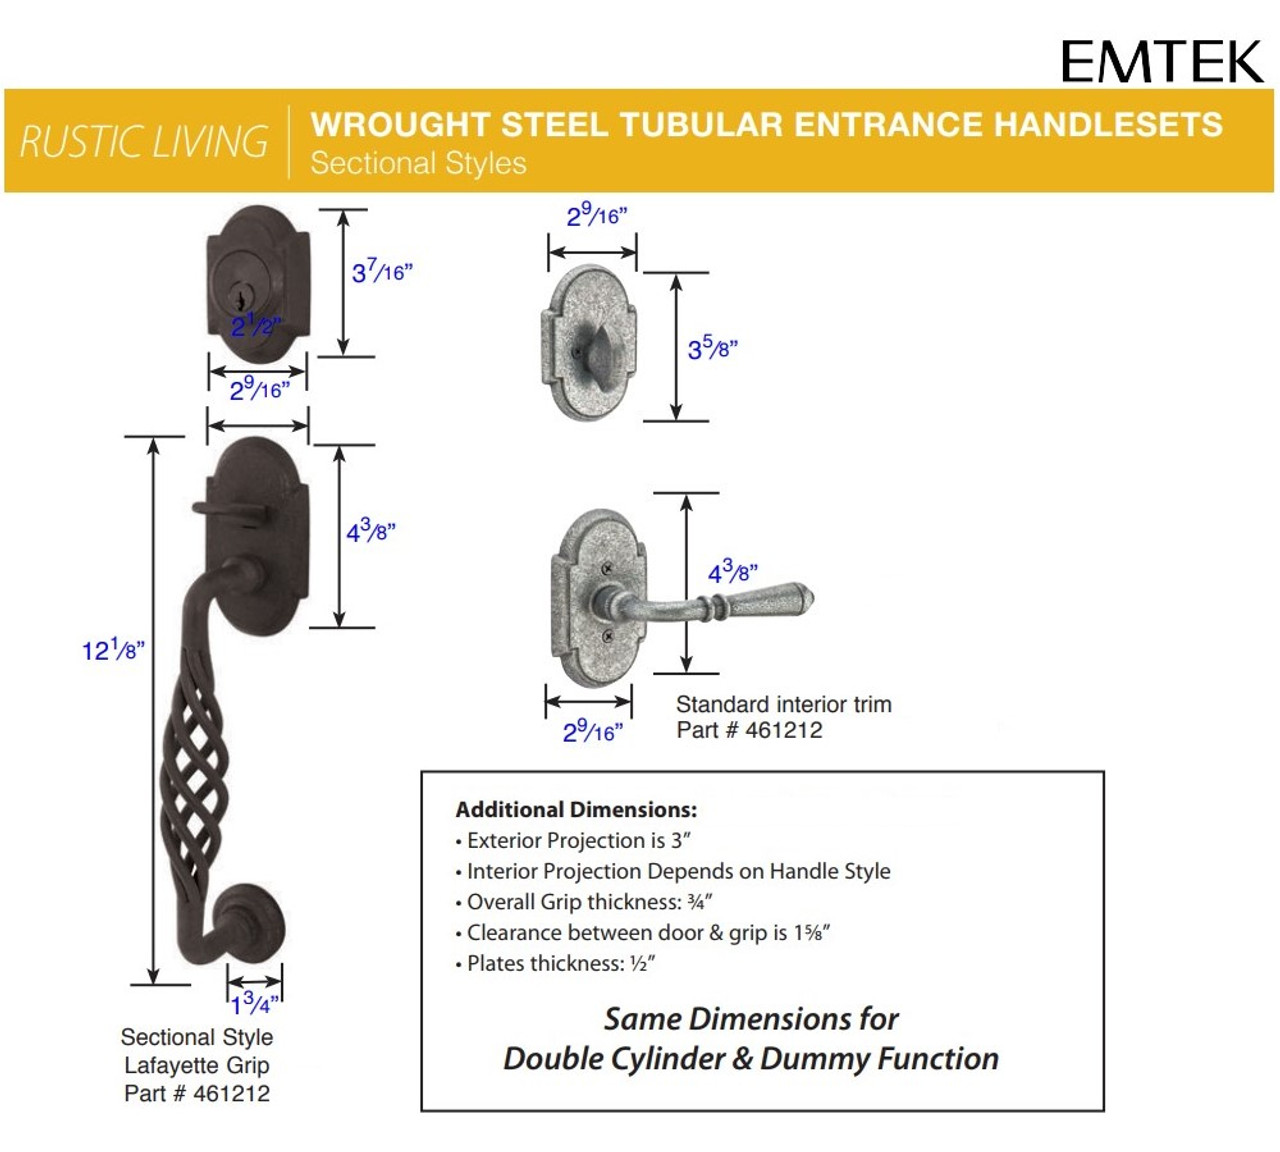 Emtek 461212 Sectional with Lafayette Grip Entrance Handleset Wrought  Steel Tubular Single Cylinder